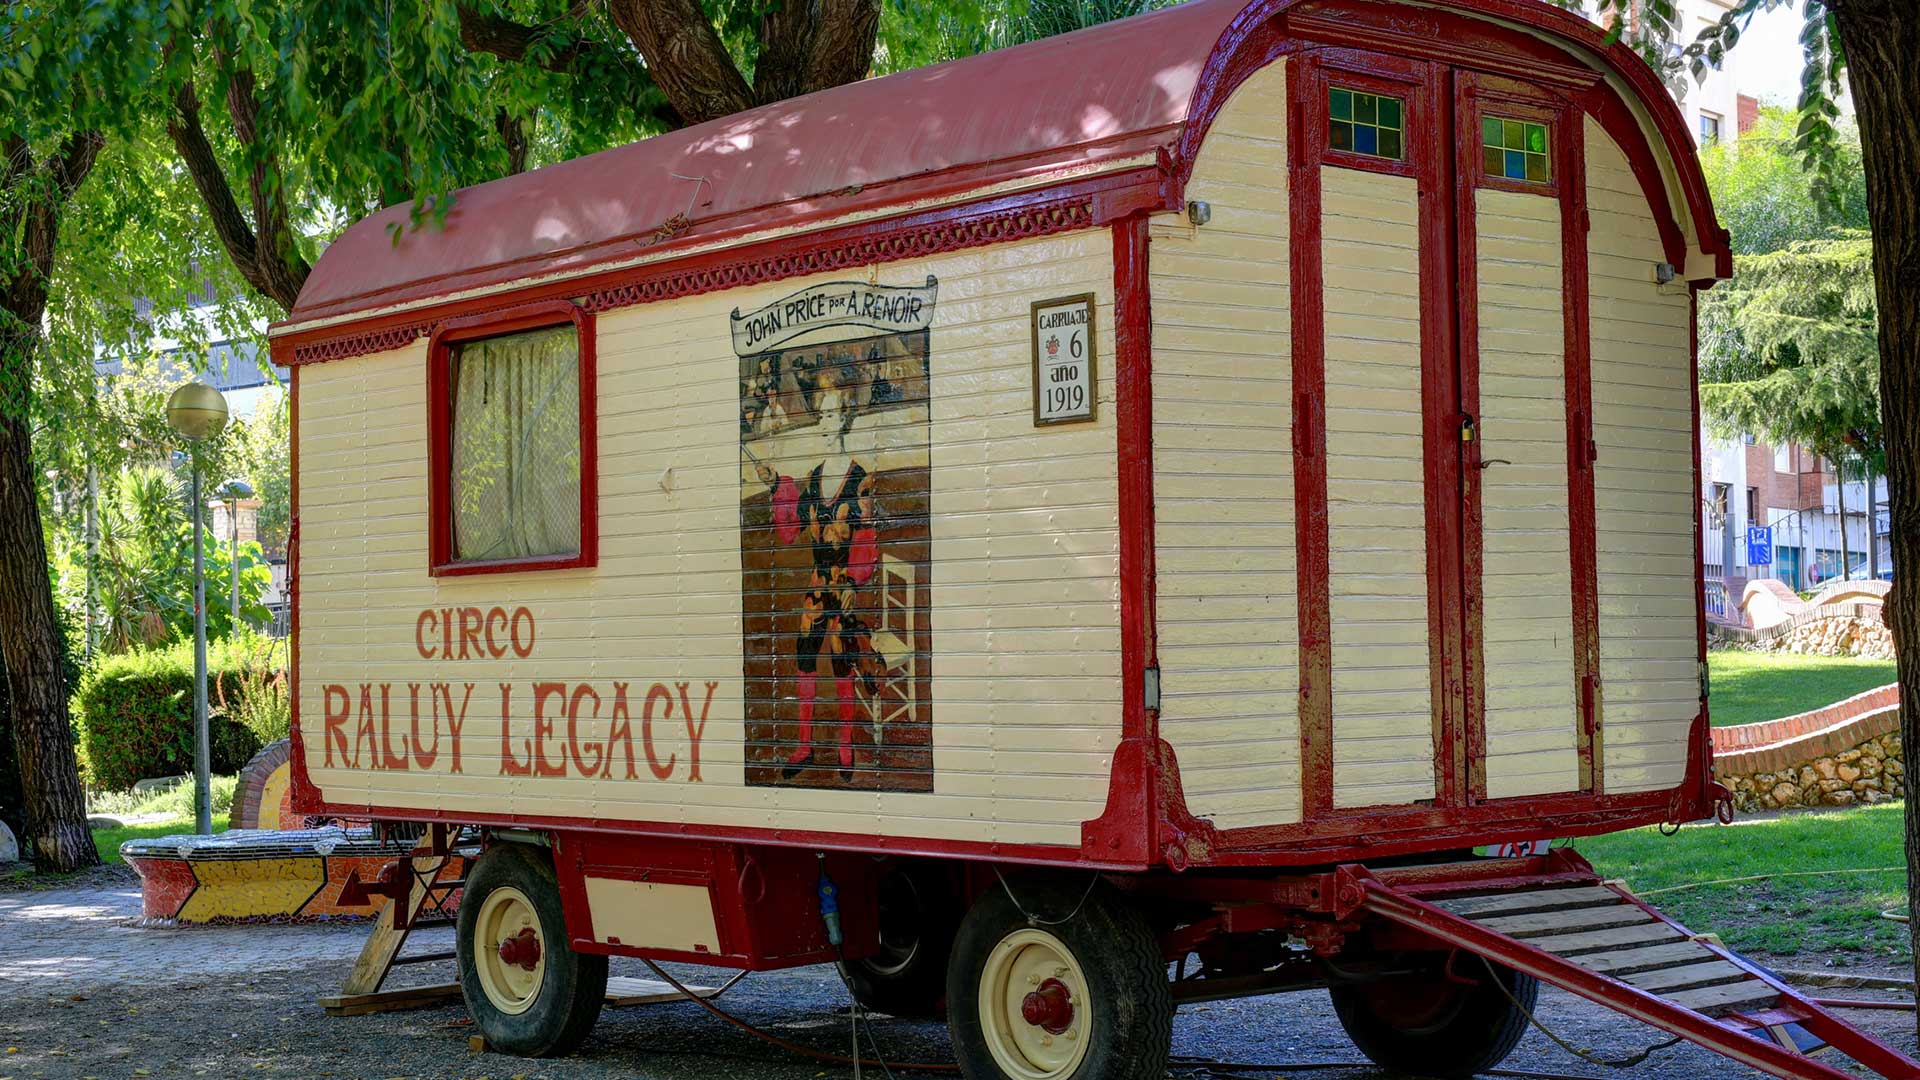 Carruaje de la caravana del Circo Raluy Legacy. Es de color rojo y blanco y está pintado. Tiene apariencia antigua